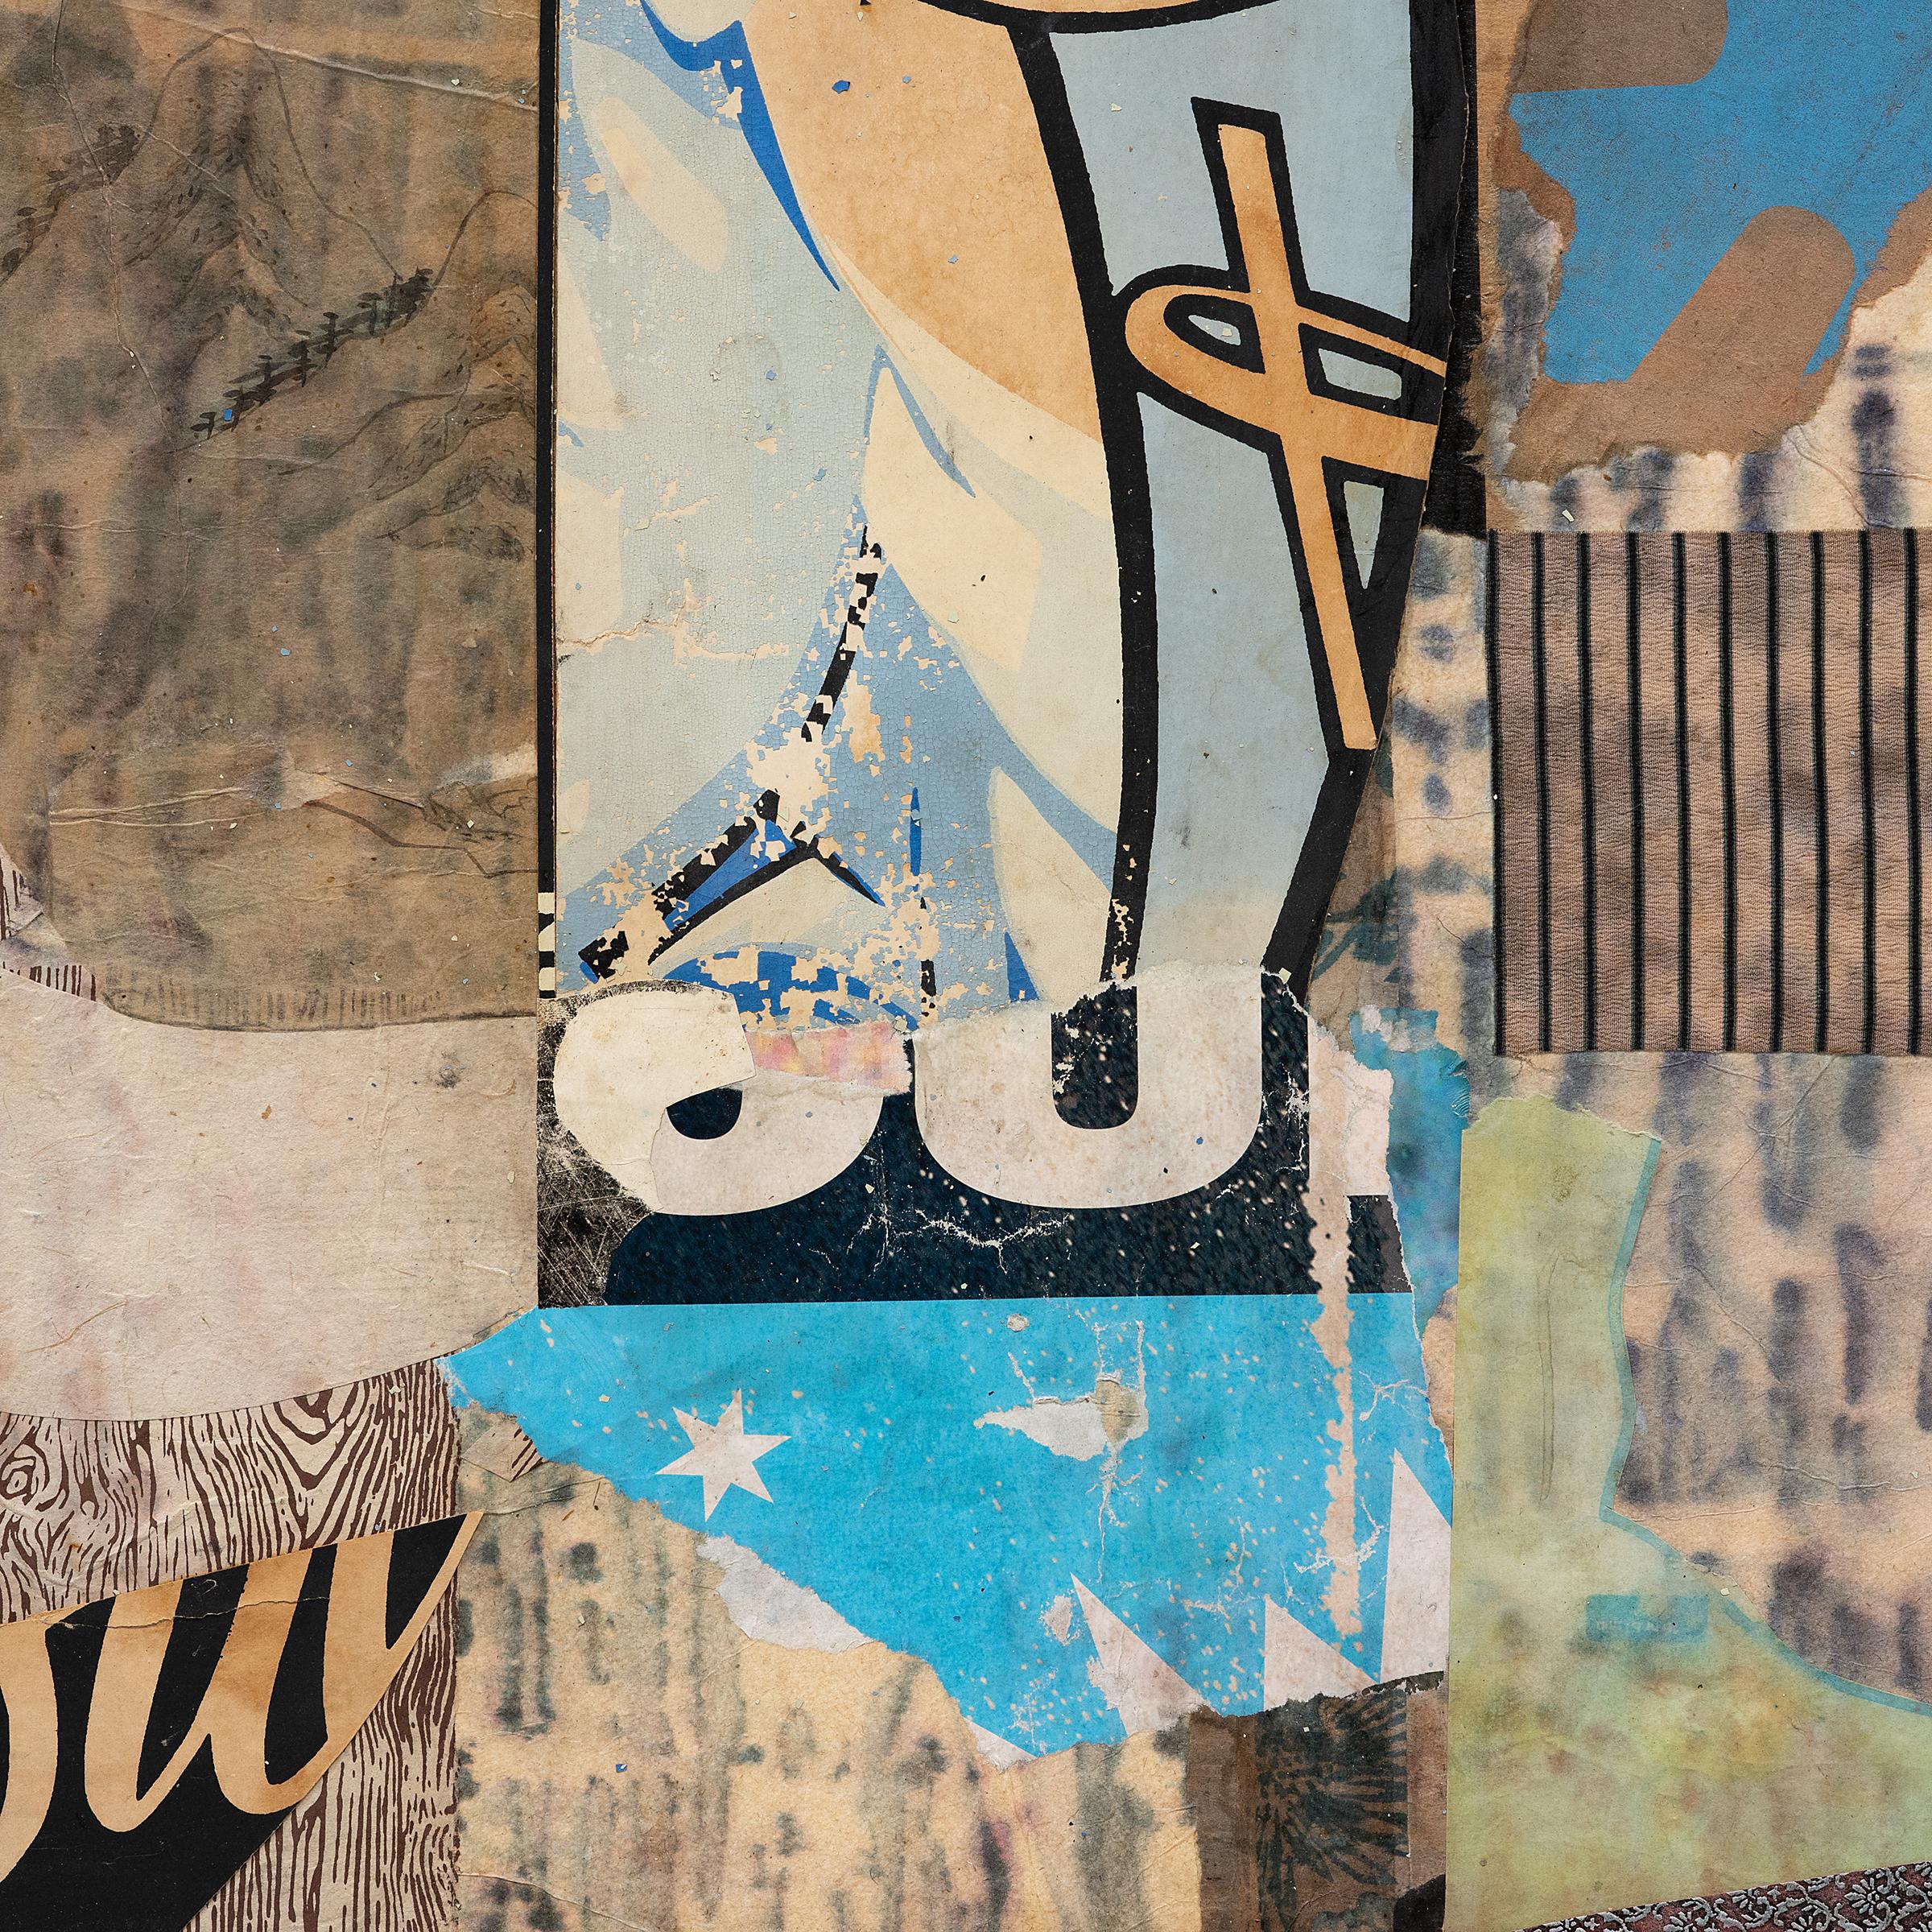 Basé à Chicago, IL, l'artiste contemporain Michael Thompson crée des cerfs-volants, des collages et des œuvres mixtes uniques, assemblés à partir de fragments matériels du passé et du présent collectés au cours de ses voyages. Sa série actuelle de